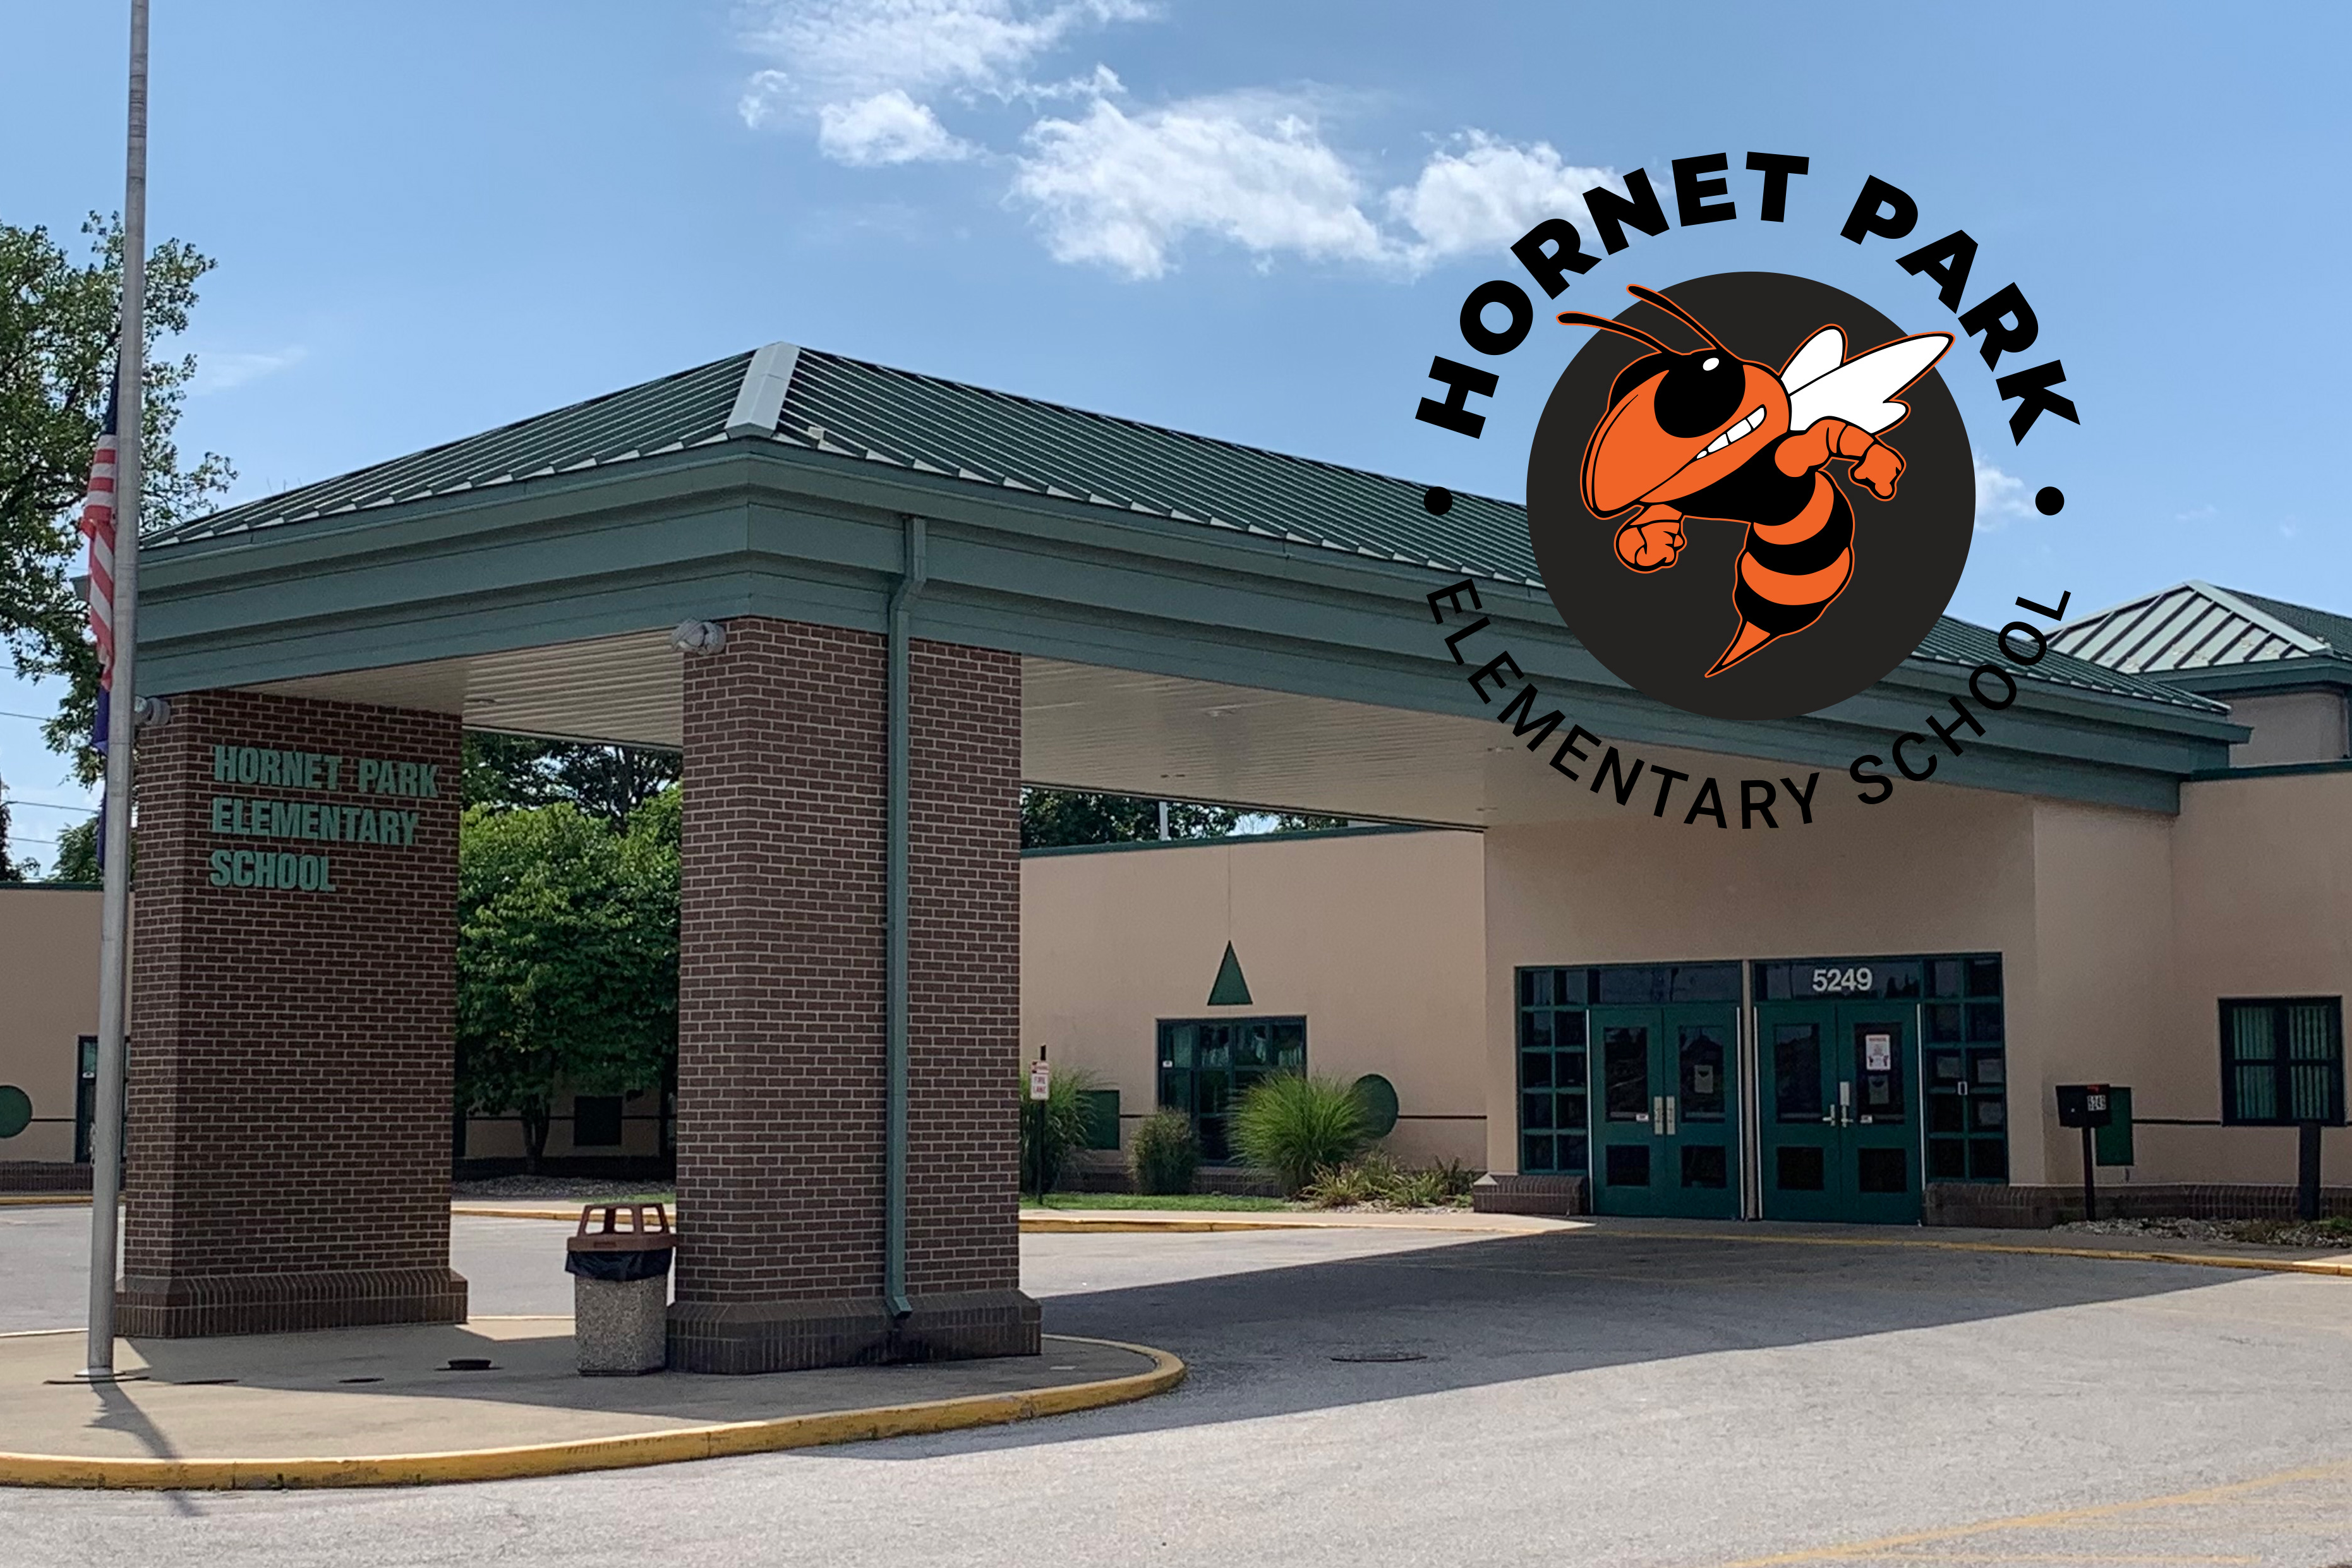 Hornet Park Elementary School